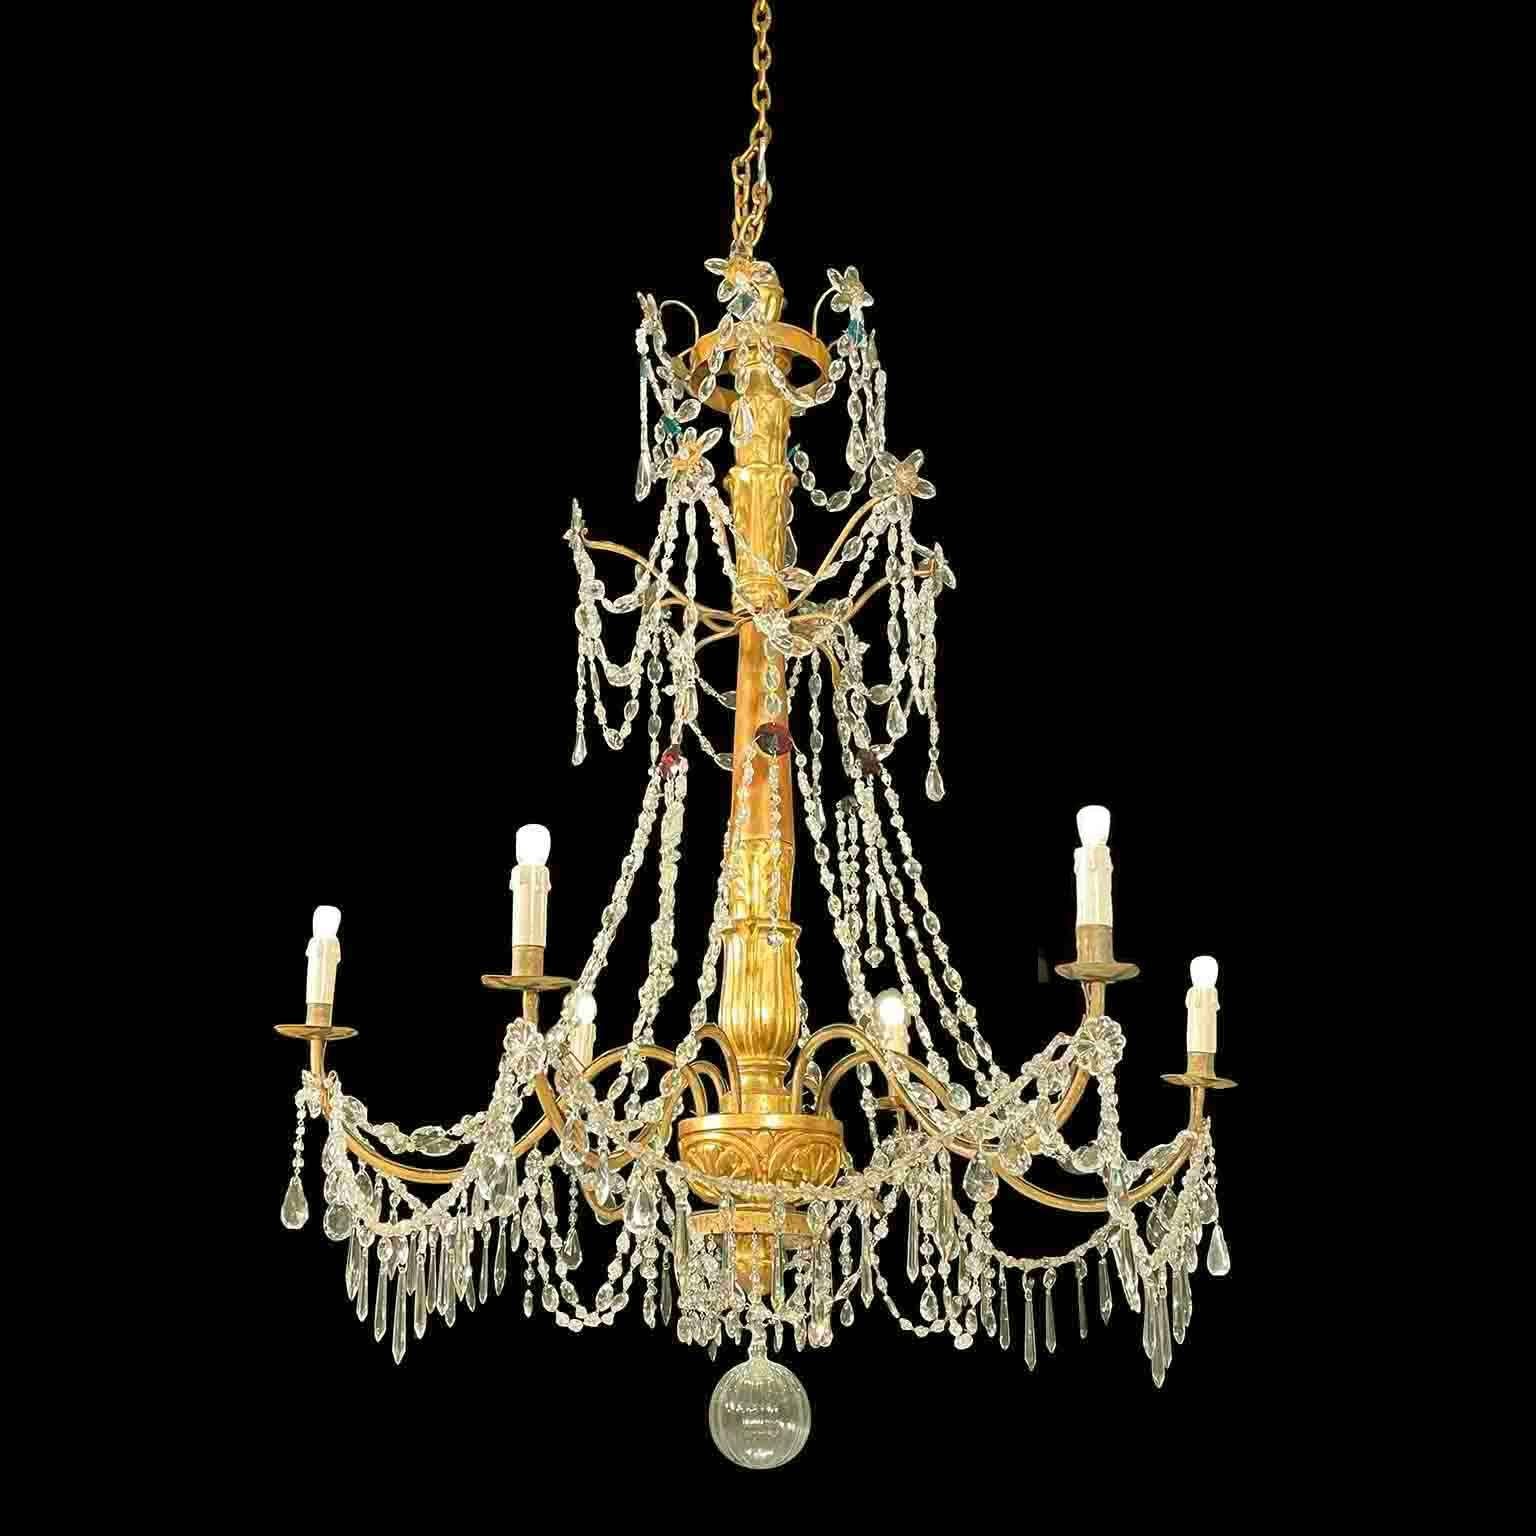 Lampadaire génois Luigi XVI Legno Scolpito e Dorato Fine 1700, come i lampadari nel Palazzo Ducale a Genova. Il se compose d'un fusto central en legno tornito, d'un sostegno intagliato e dorato et de sept bracci curvi in ferro sempre dorati e